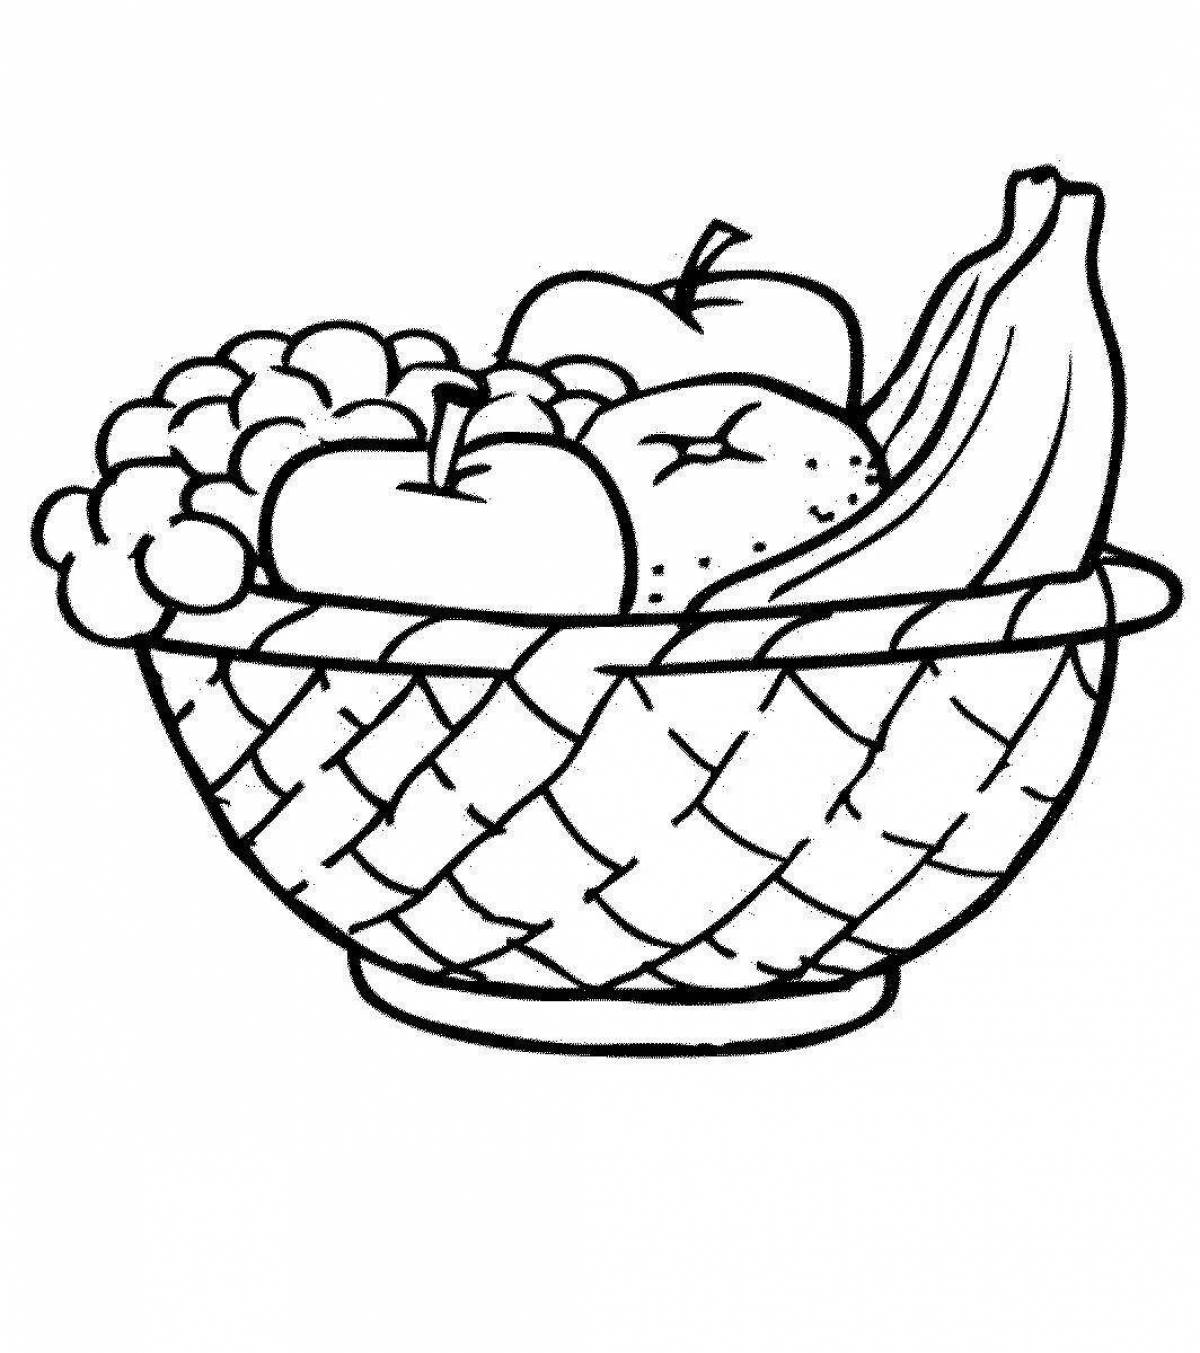 Coloring funky fruit basket for kids